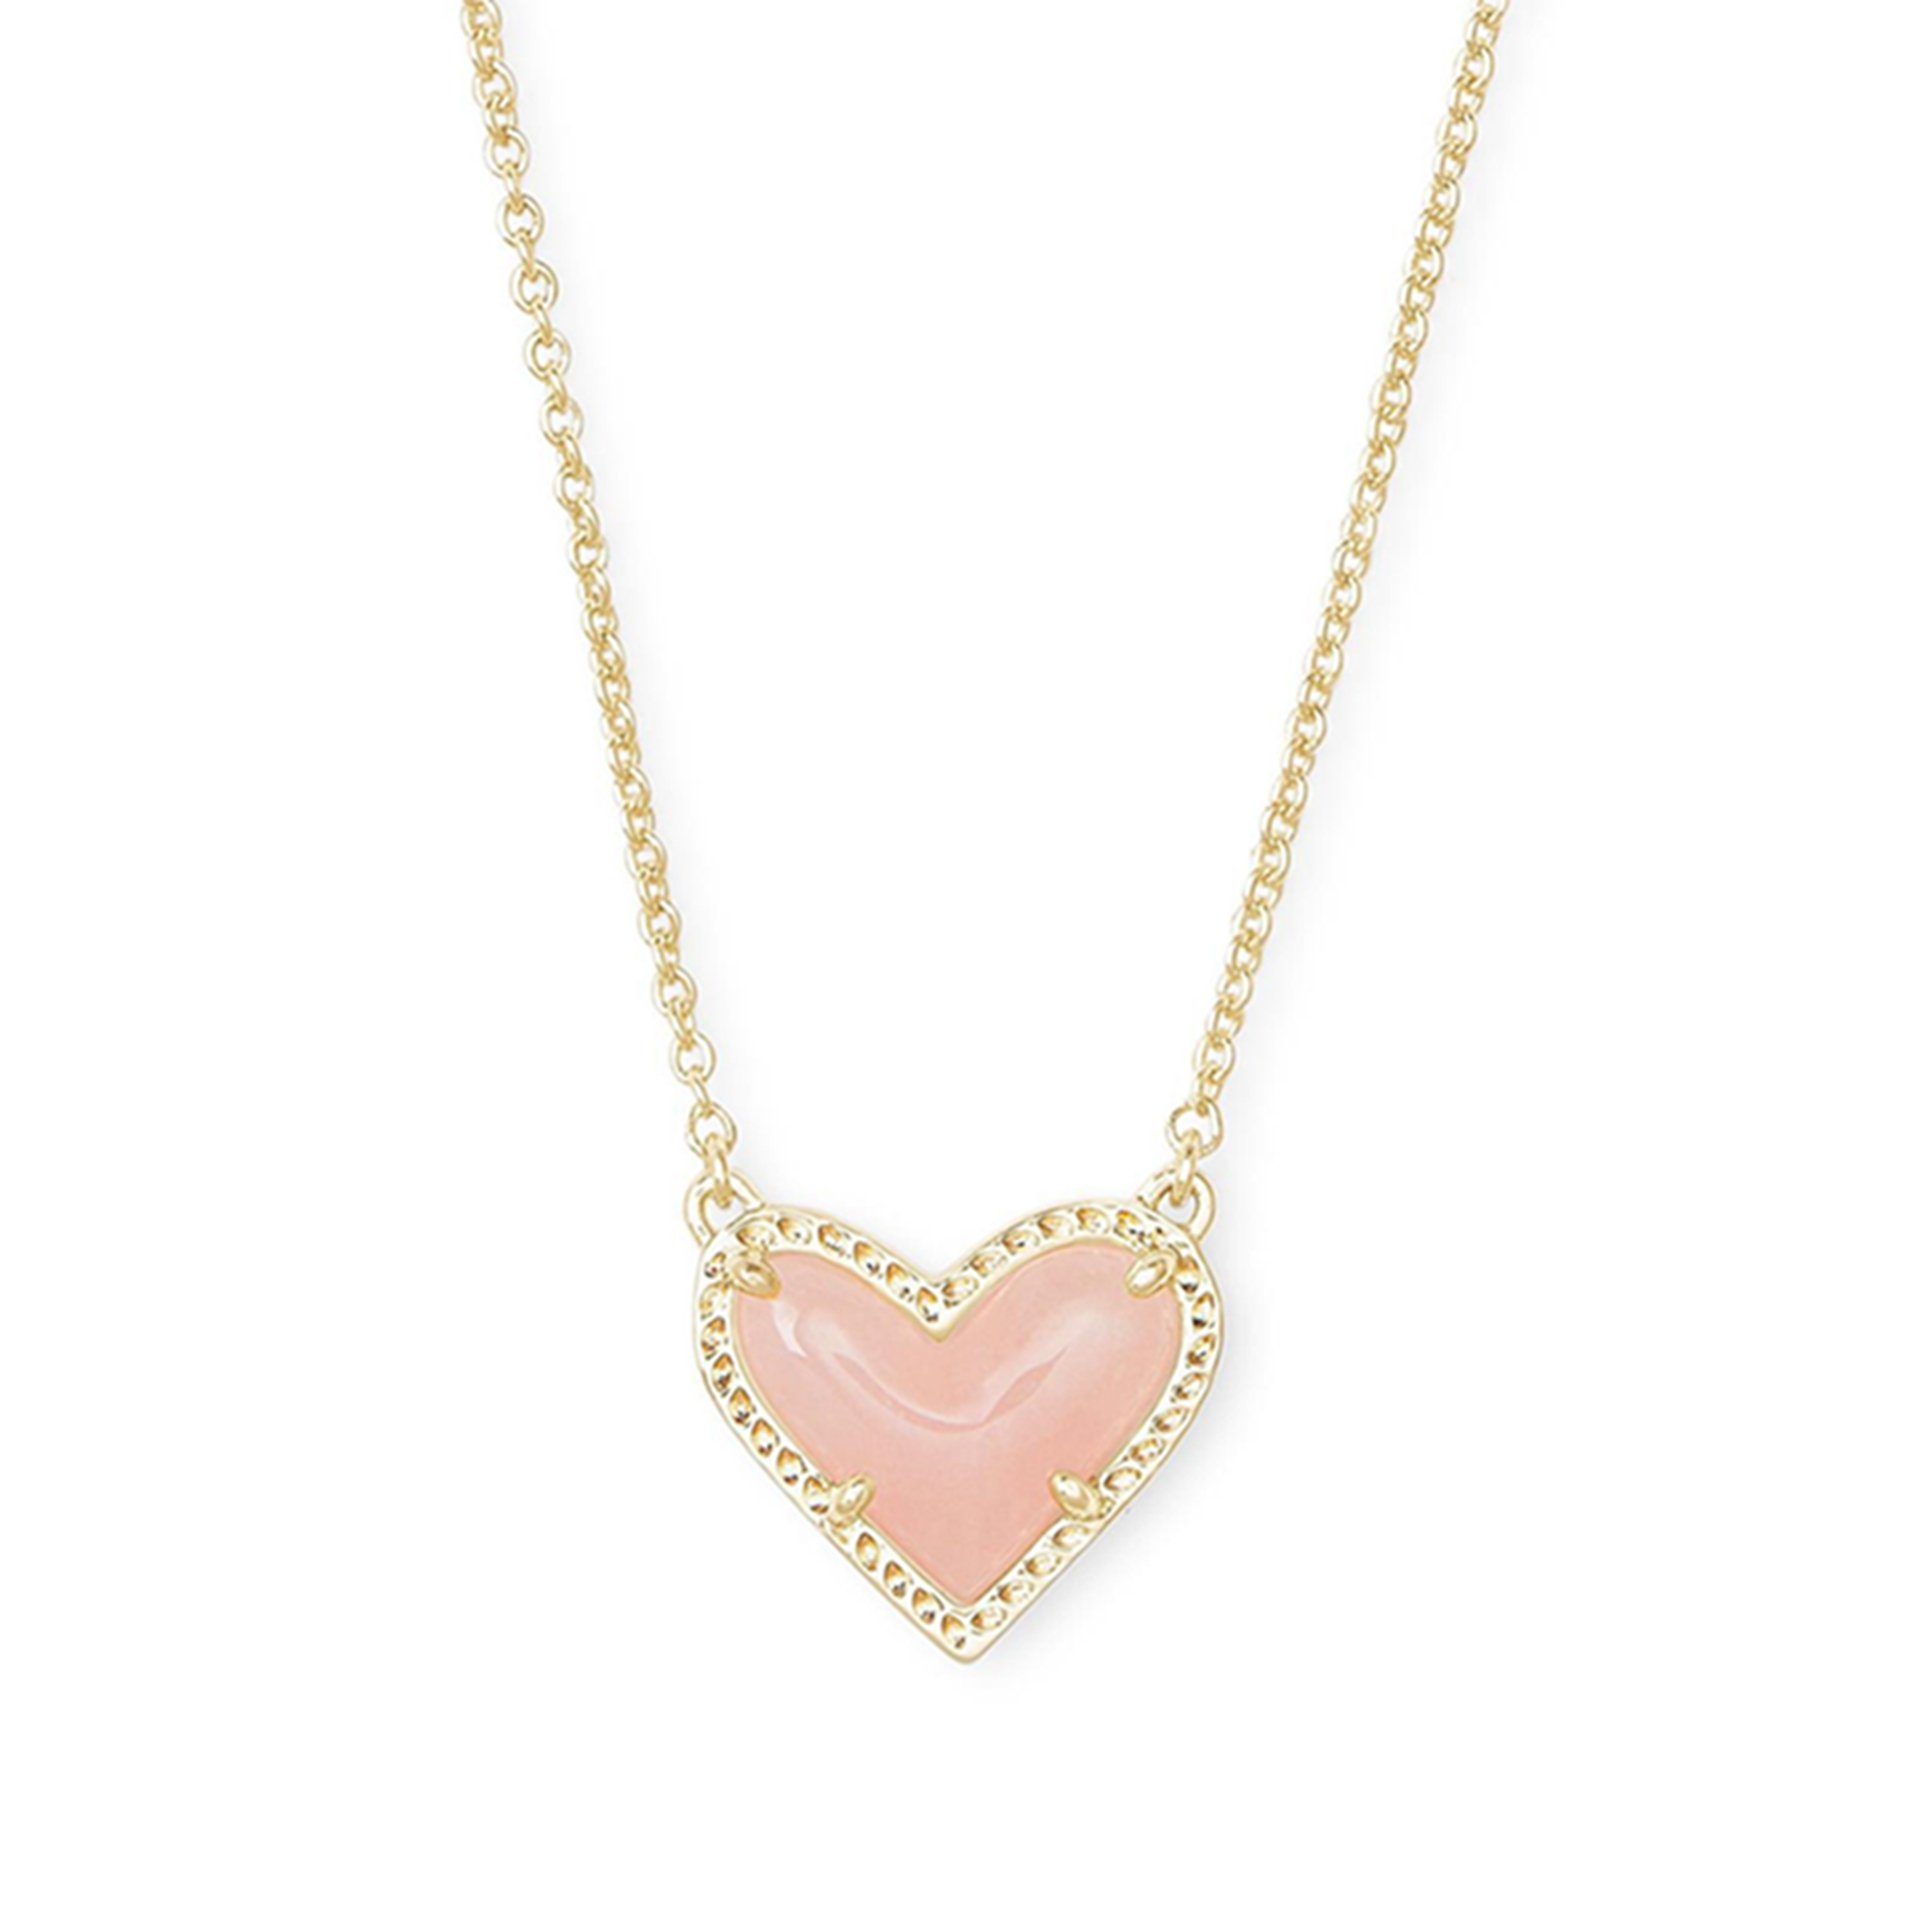 WaKuKa Charm-Kette Herzförmige Anhänger-Halskette für Damen, Schmuck, Geschenk Rosa